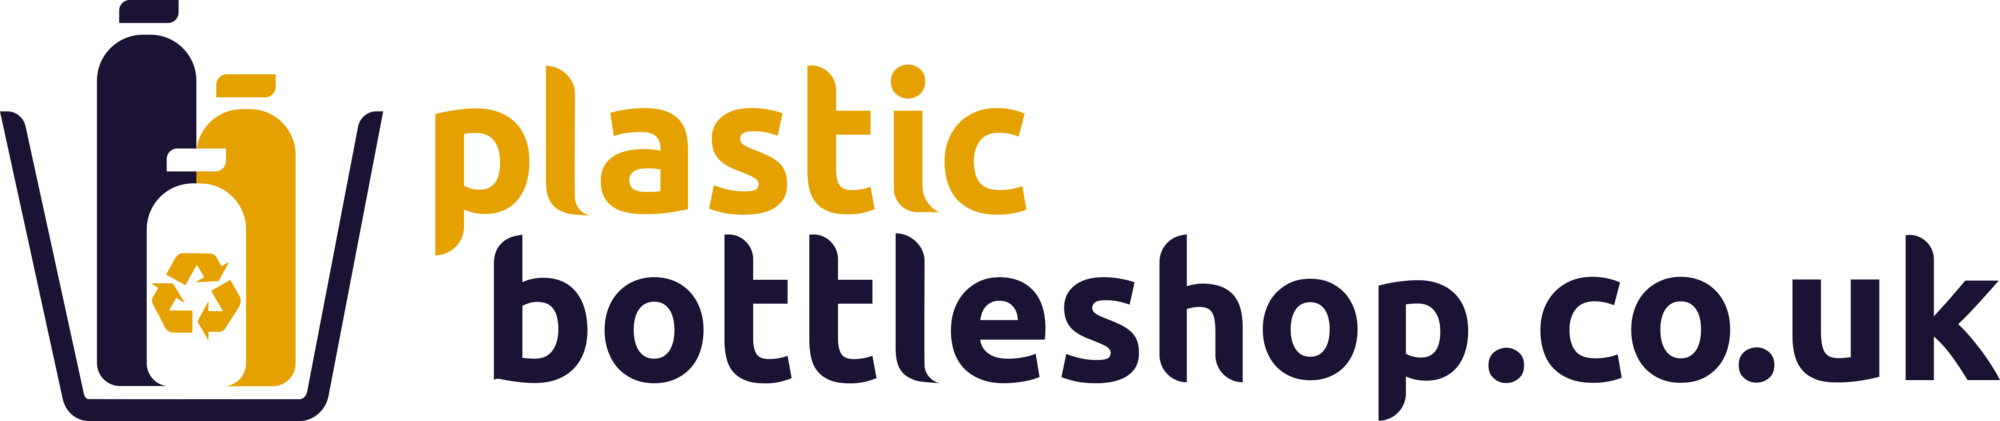 Plasticbottleshop.co.uk